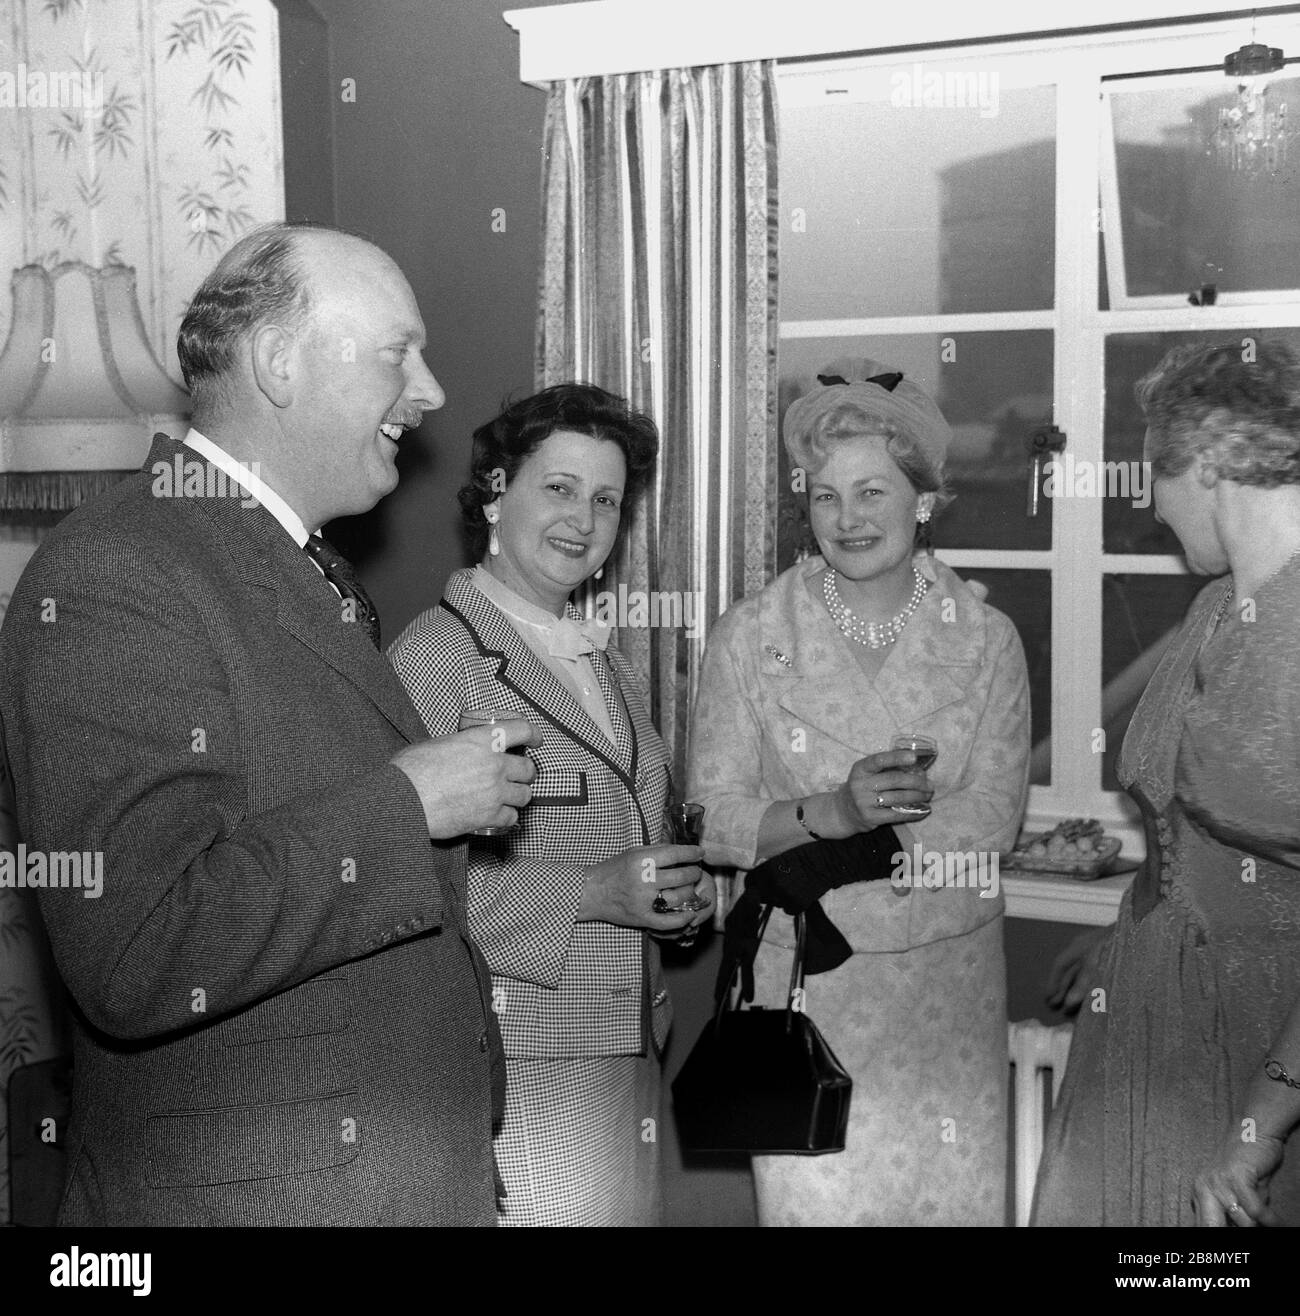 1962, persone storiche, ben vestite, mature che si divertono in una festa d'anniversario in una casa, Inghilterra, Regno Unito. Foto Stock